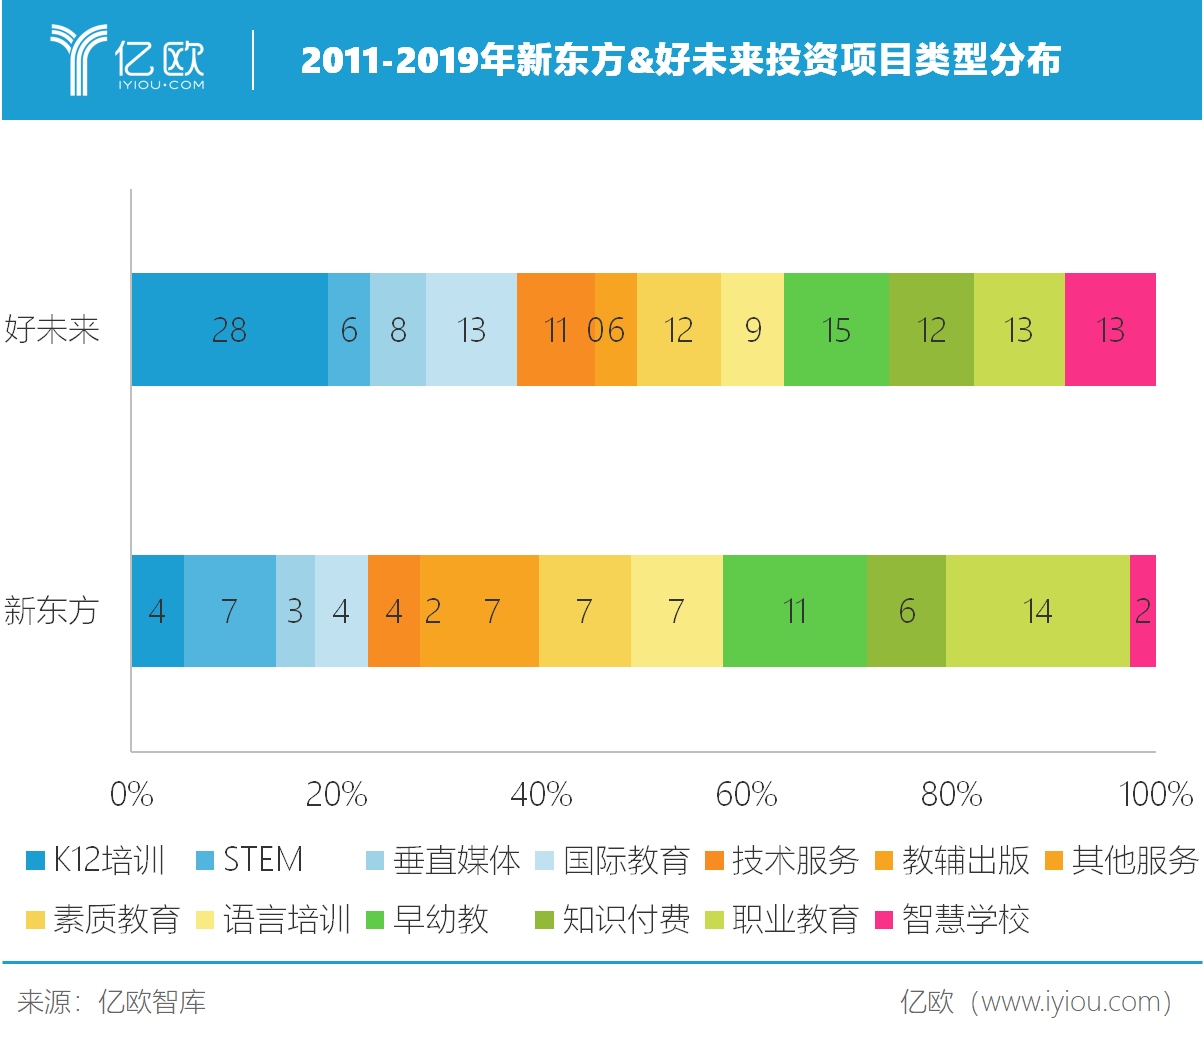 亿欧智库：2011-2019年新东方&好未来投资项目类型分布